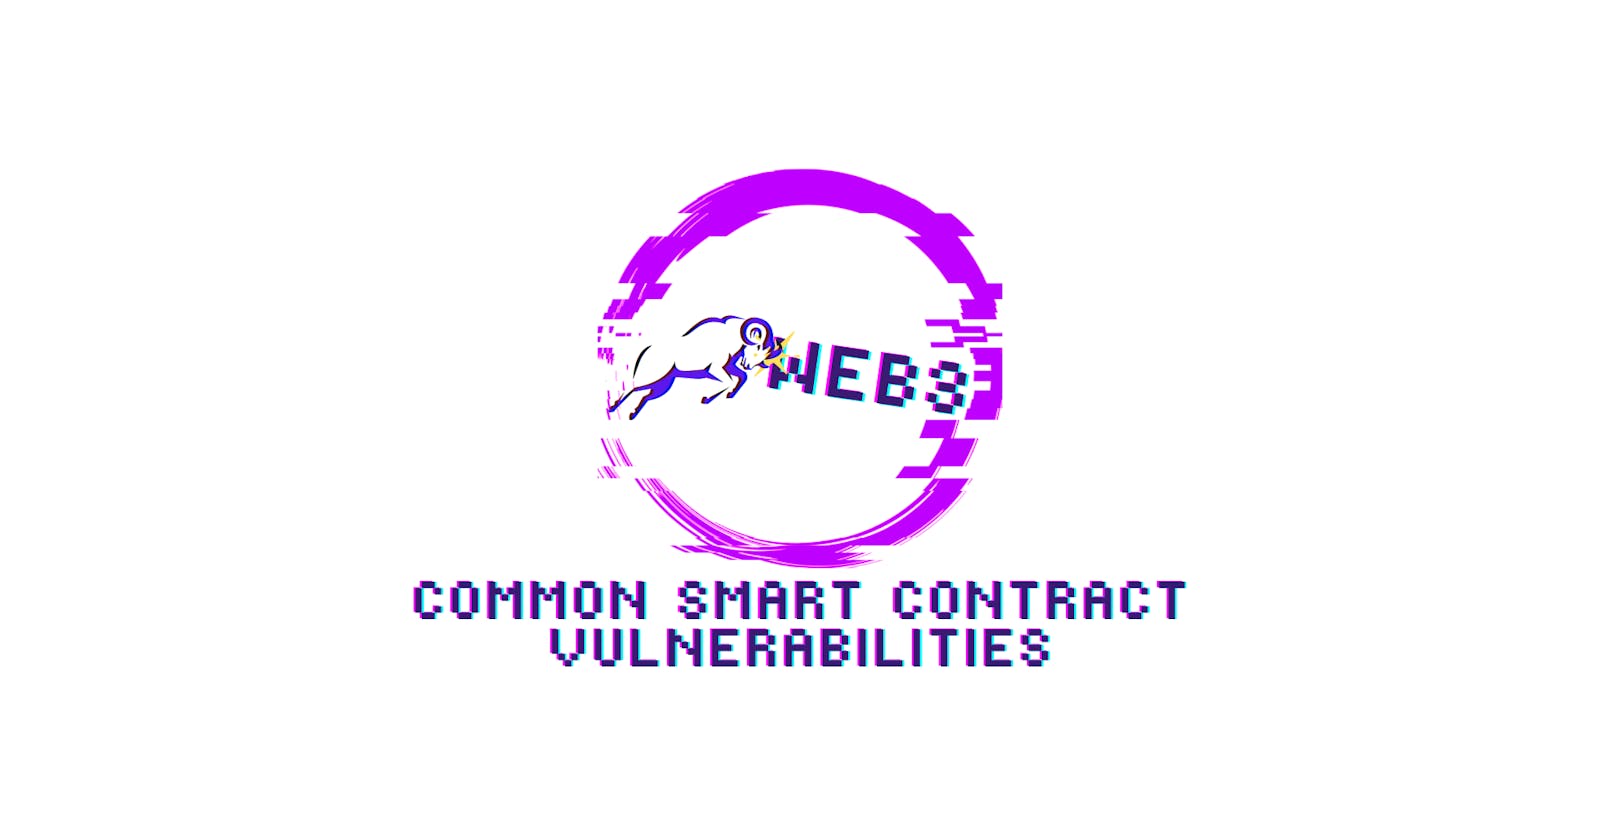 Common Smart Contract Vulnerabilities